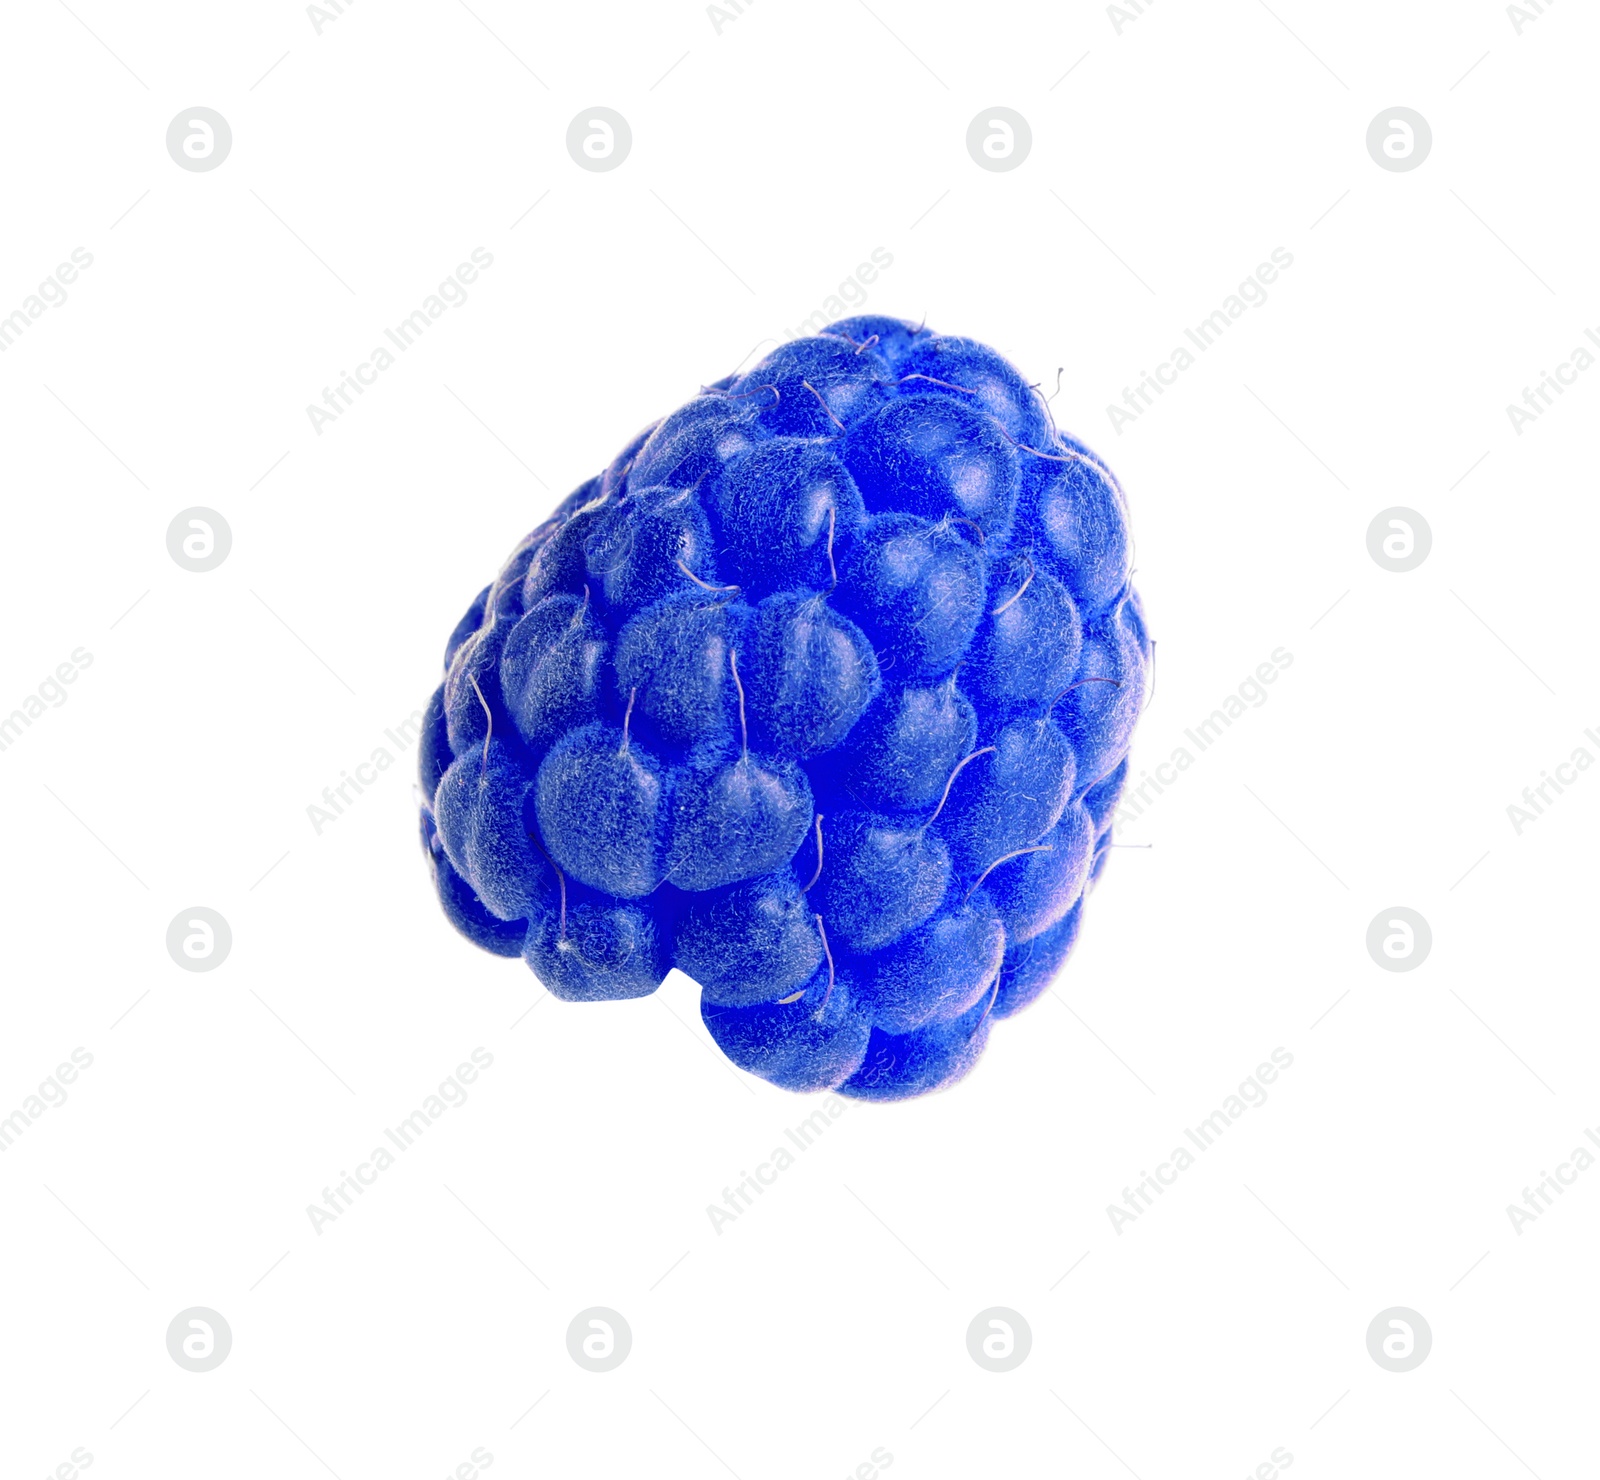 Image of Fresh tasty blue raspberry isolated on white